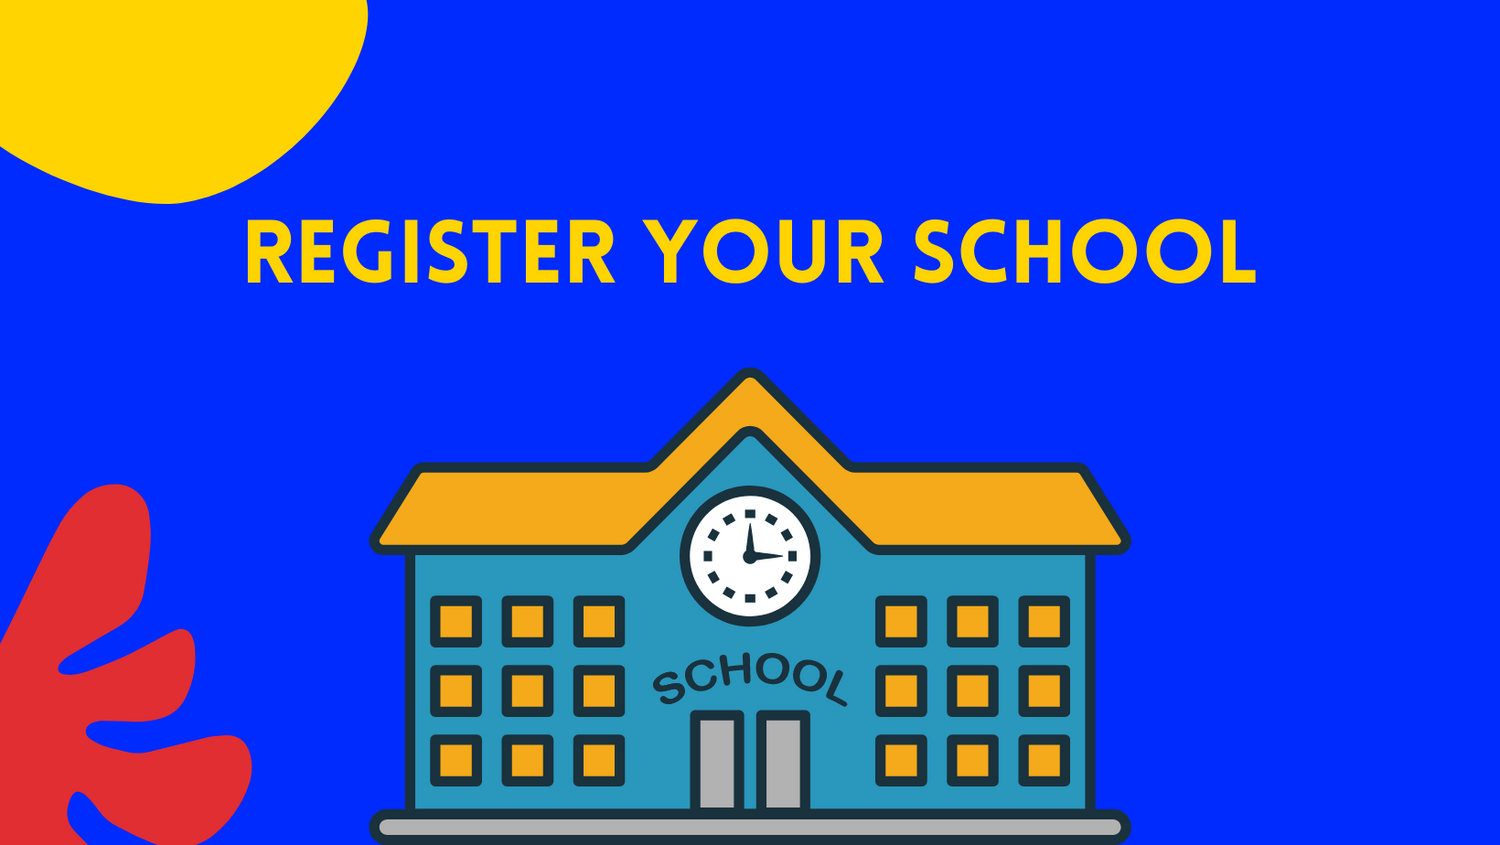 Register your school banner